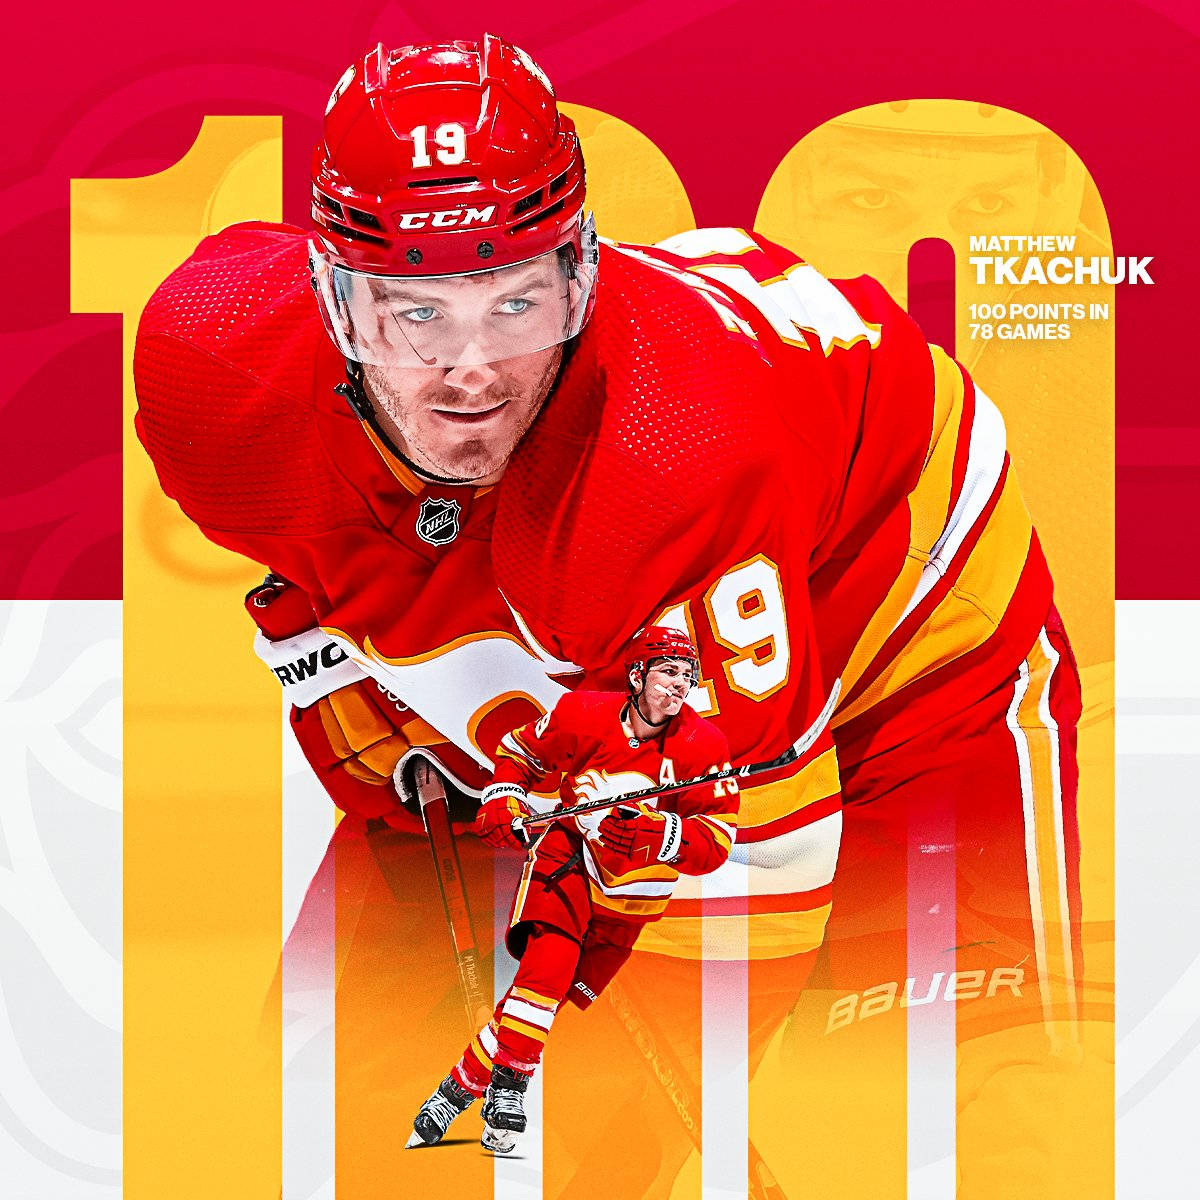 Matthew Tkachuk har gjort 100-point-mærke første gang i Calgary Flames' historie. Wallpaper